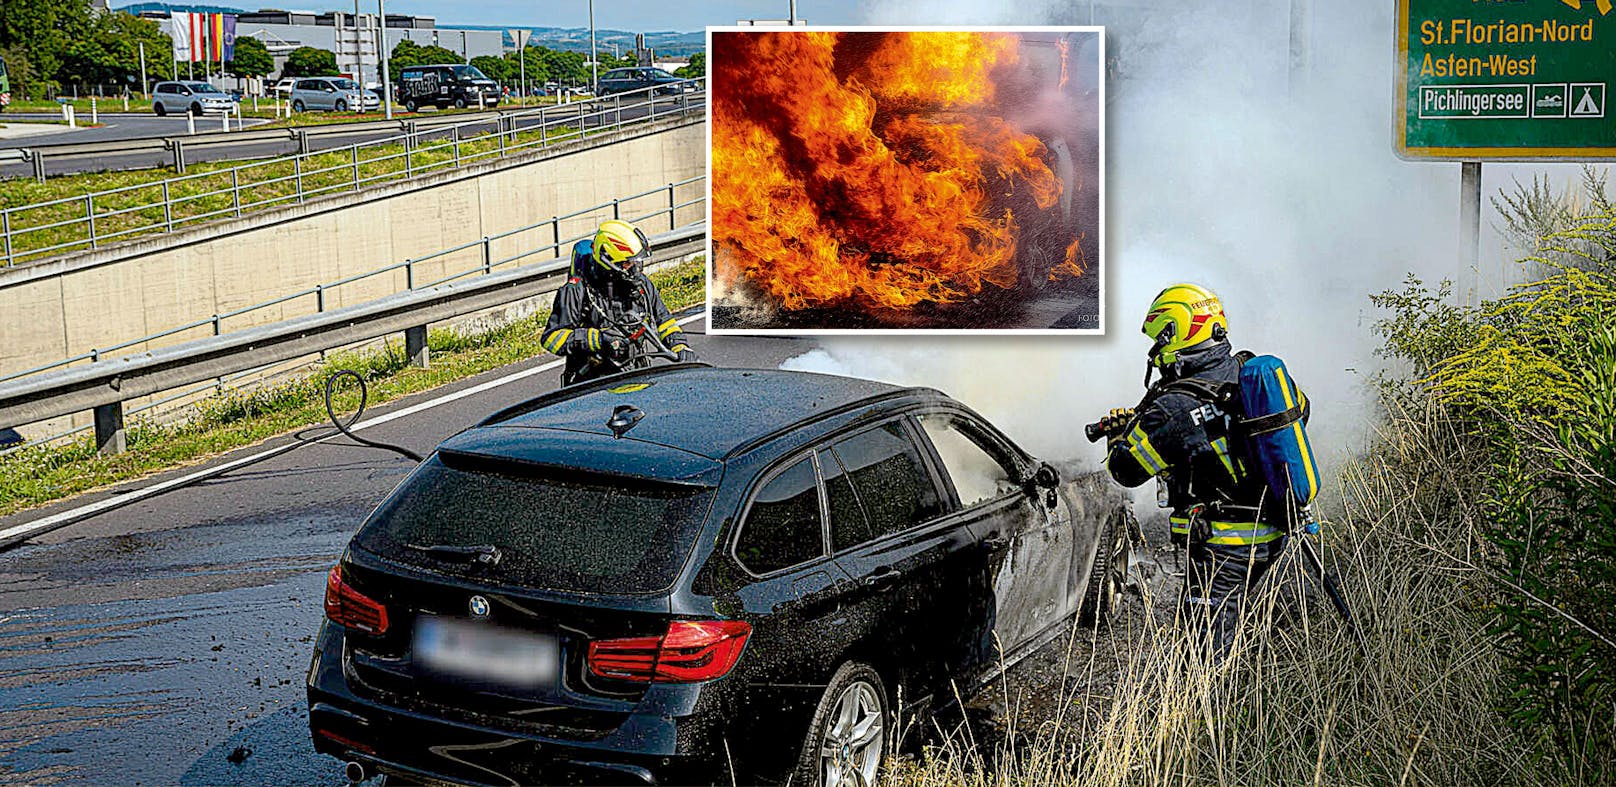 Flammen aus Motorhaube – Vater rettet Kind vor Inferno